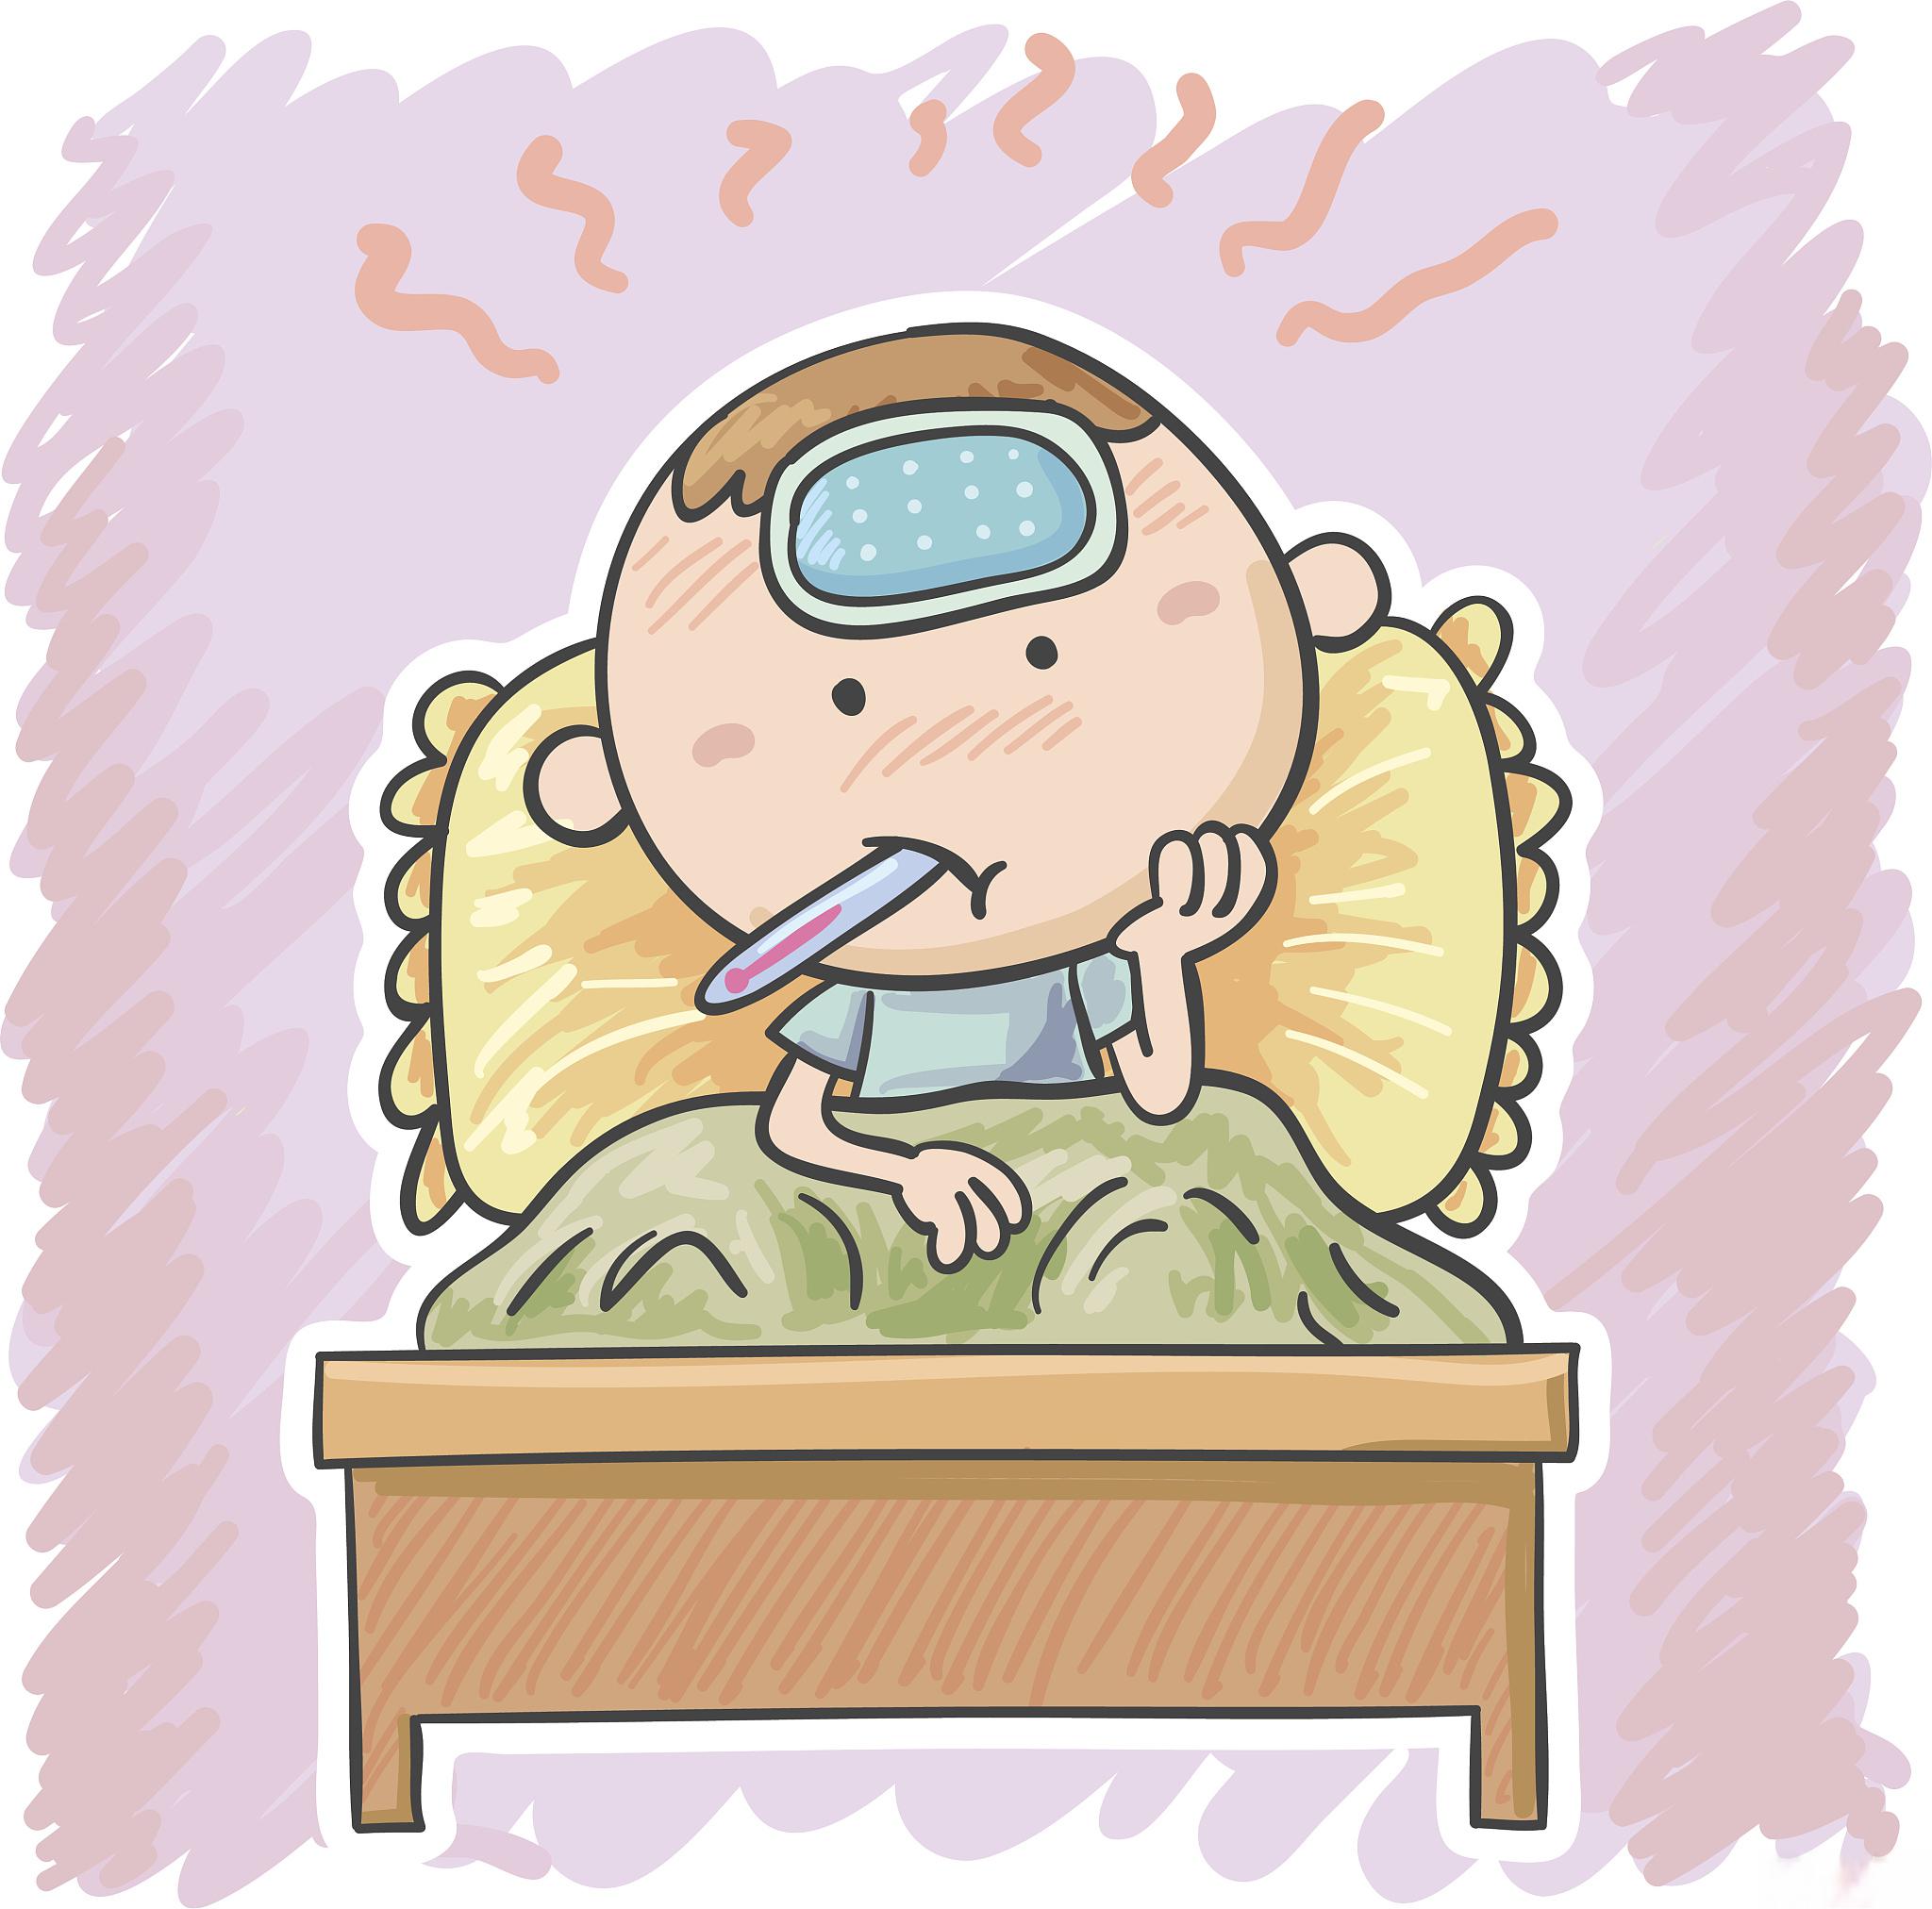 宝宝的抵抗力较差,容易生病,经常出现感冒和发烧的情况